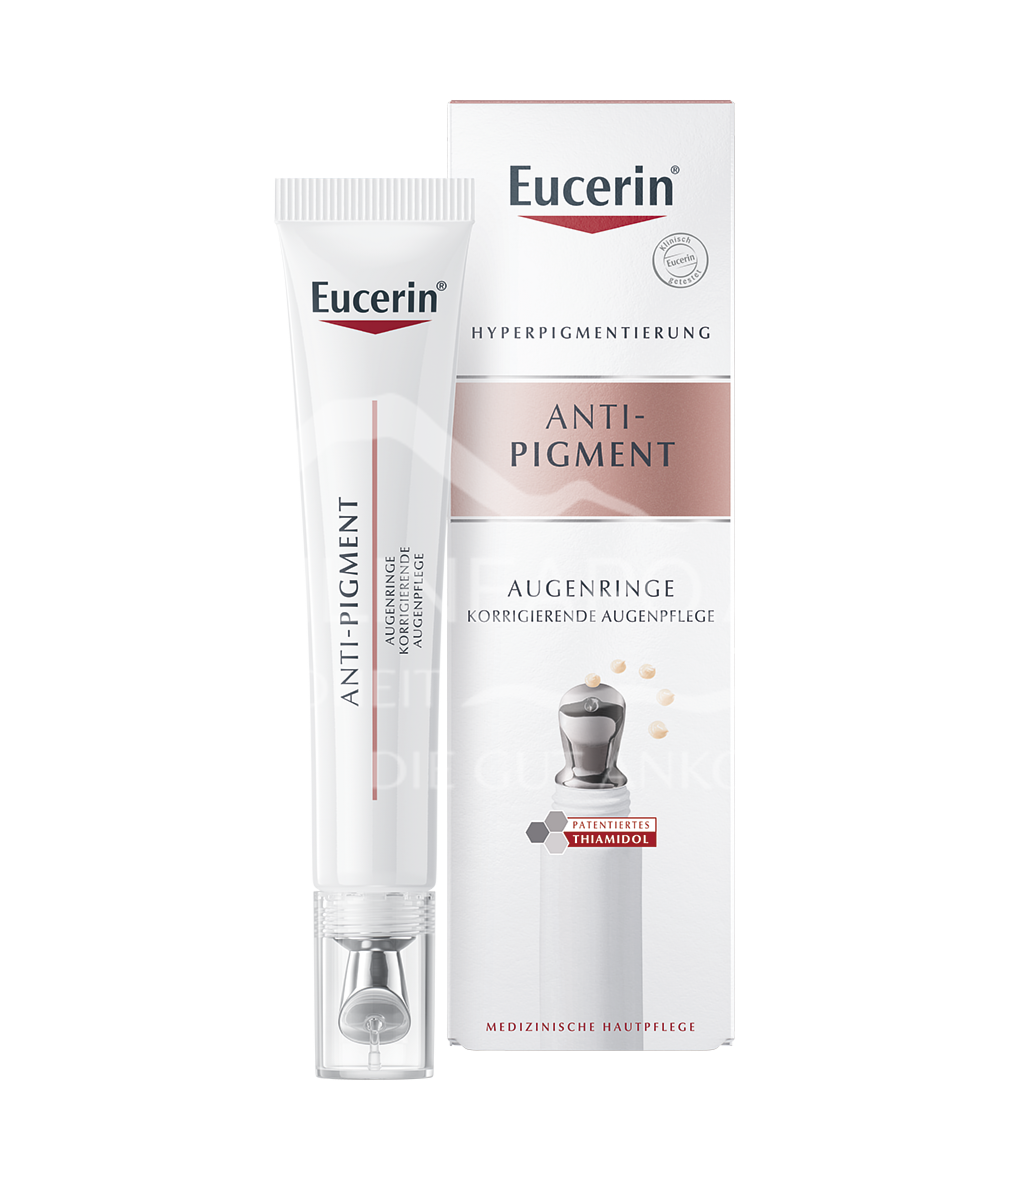 Eucerin Anti-Pigment Augenringe Korrigierende Augenpflege